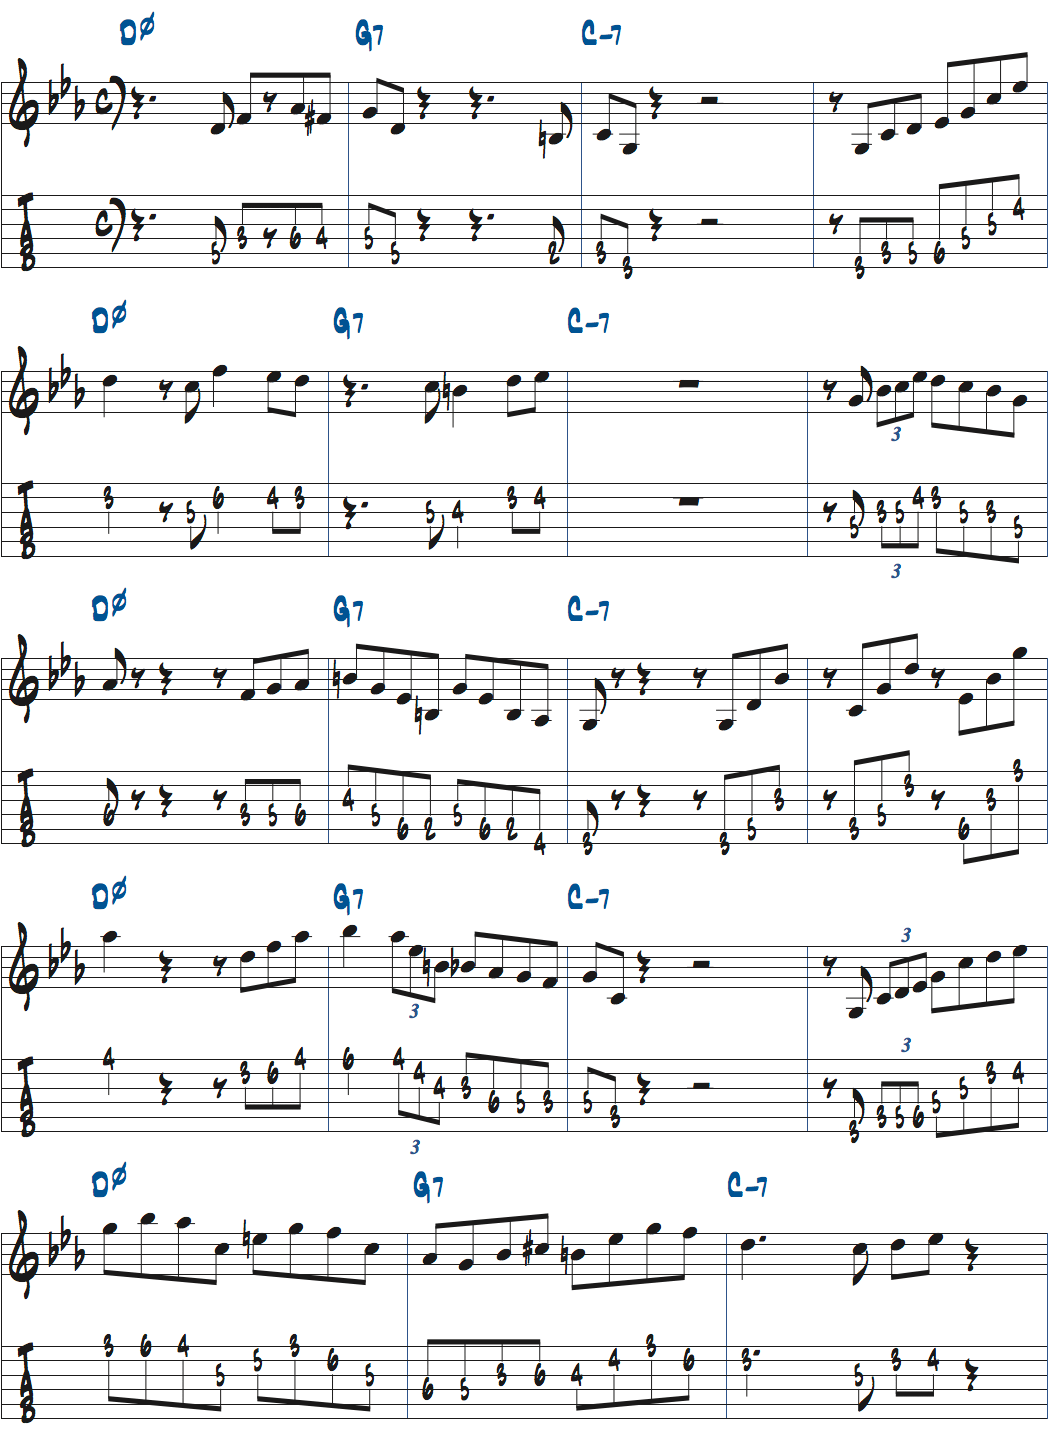 Dm7(b5)-G7-Cm7でのアドリブ例ページ1楽譜